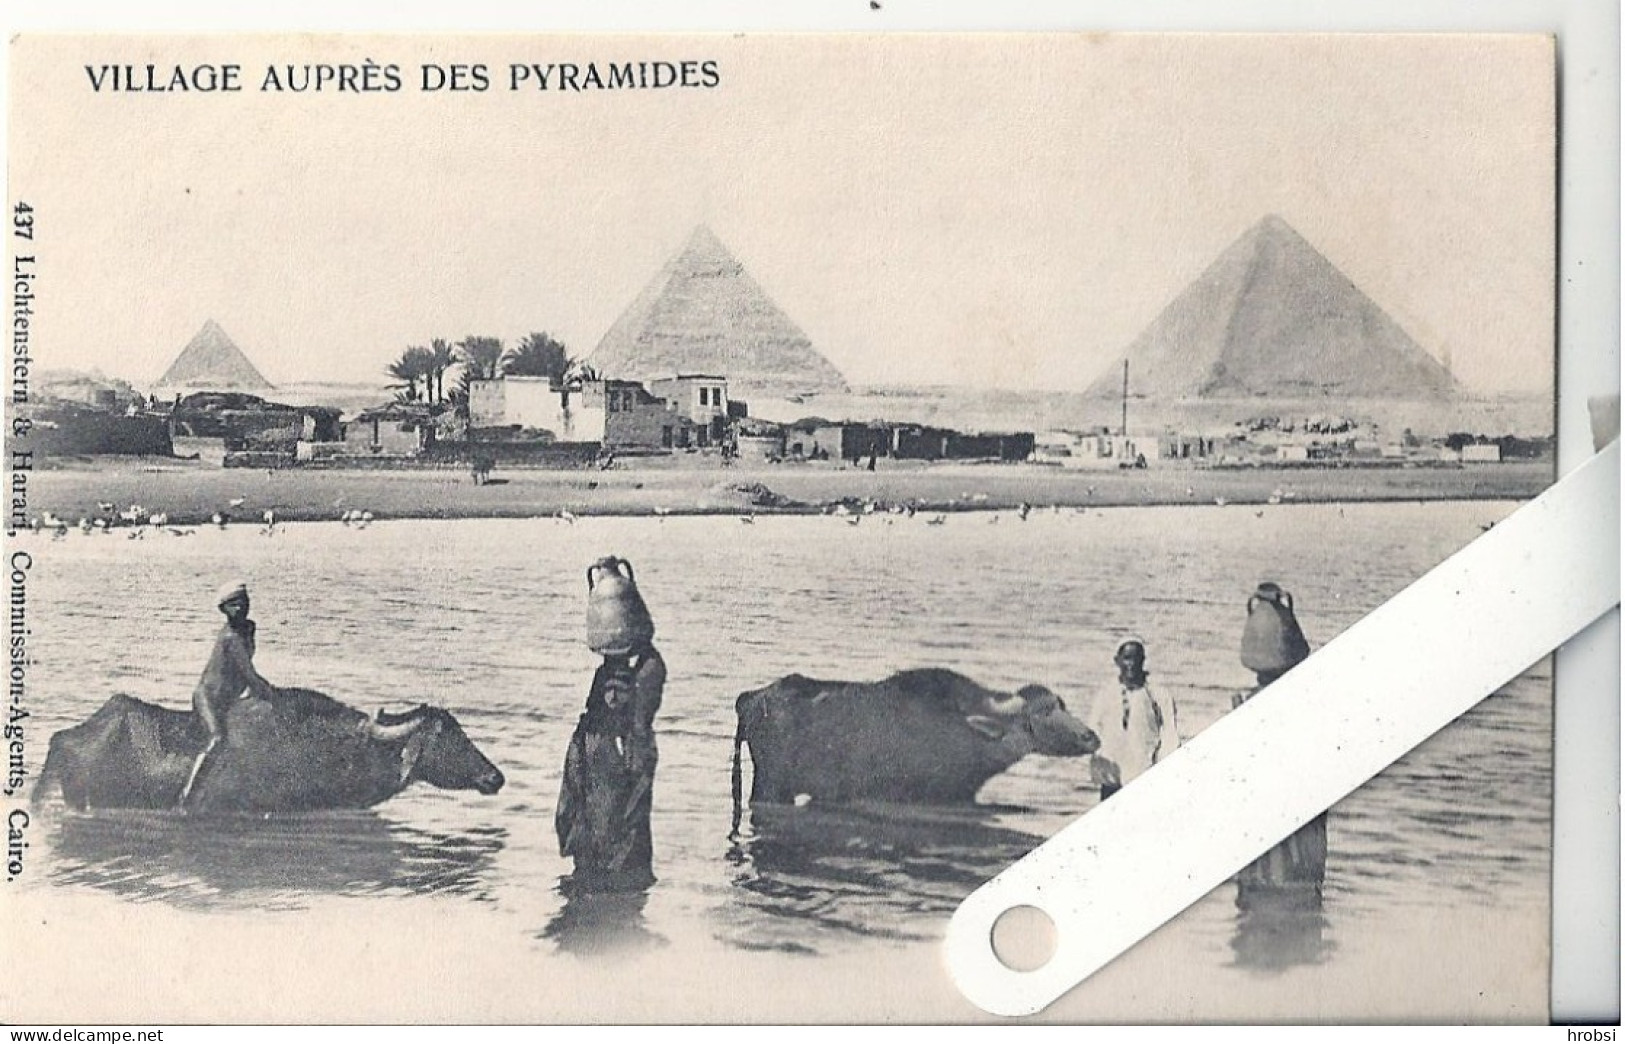 Egypte Village Auprès Des Pyramides Pyramides, Ed Lichtenstern & Harari 437, Animation - Pyramids